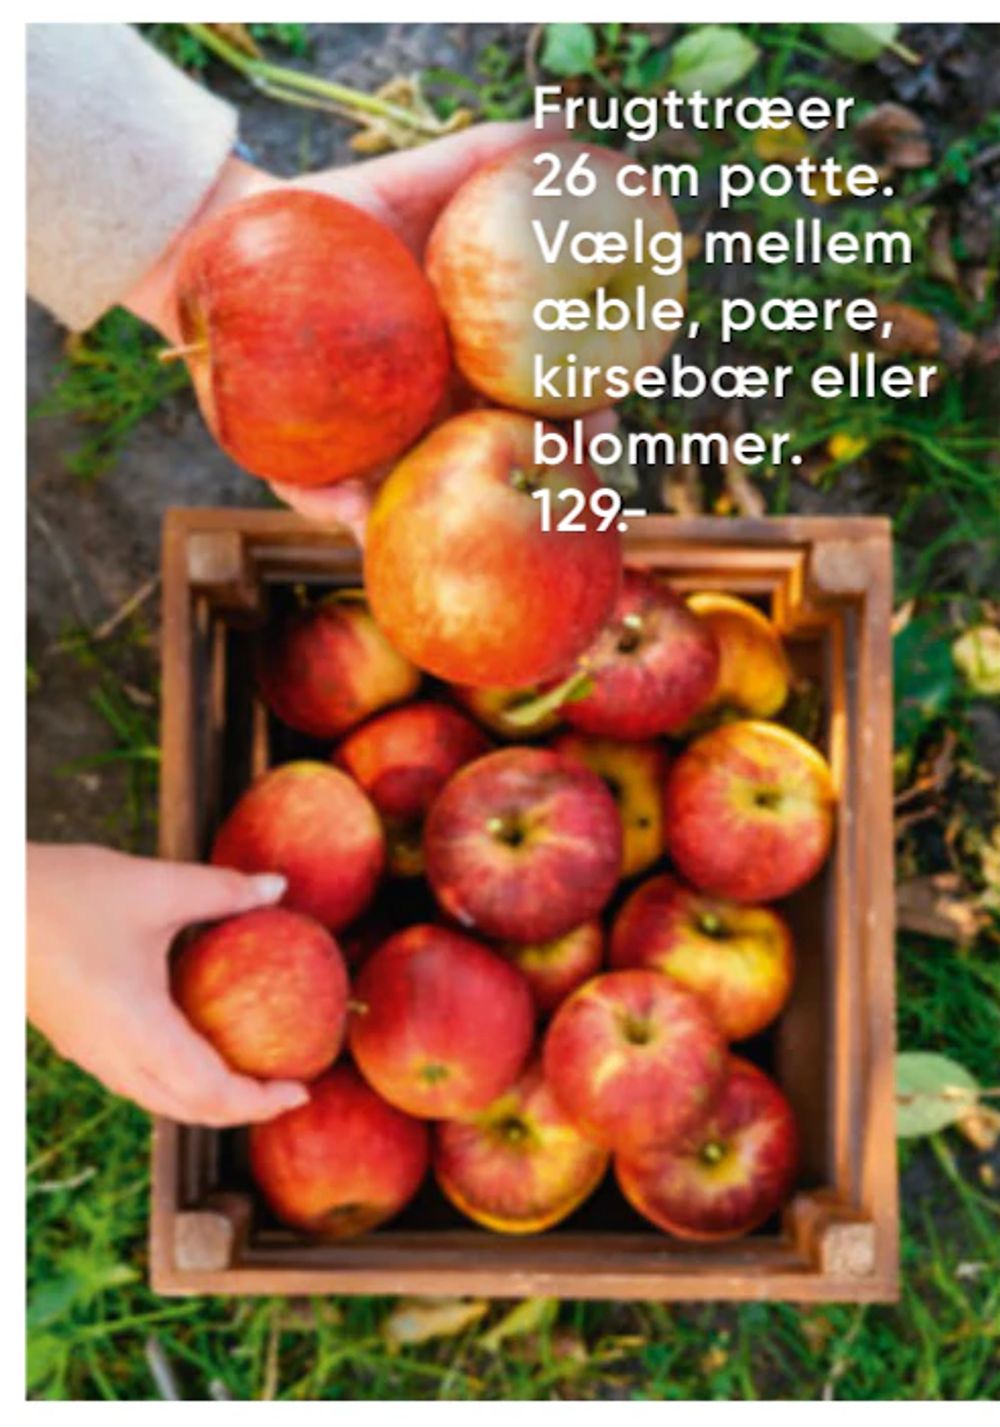 Tilbud på Frugttræer 26 cm potte fra Bilka til 129 kr.